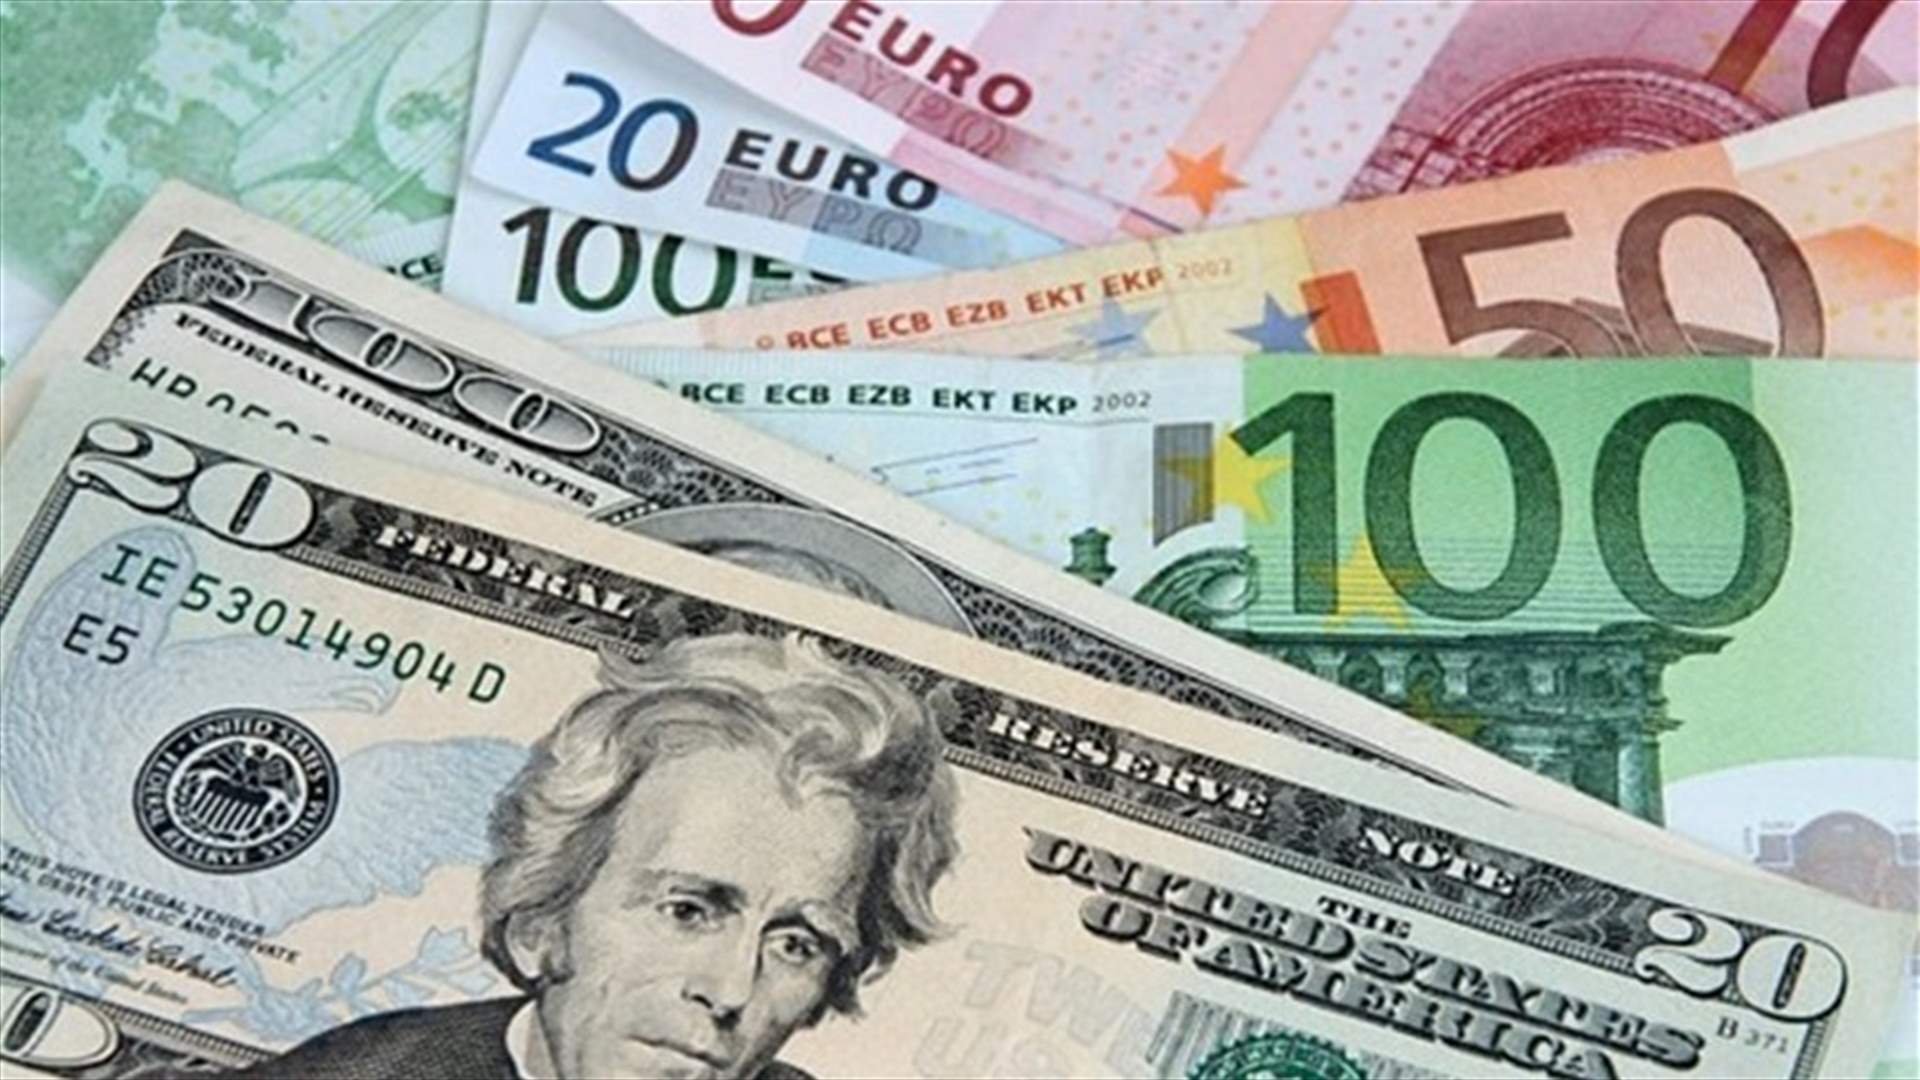 ايران تتخلى عن الدولار وتتحول إلى اليورو في معاملاتها الأجنبية